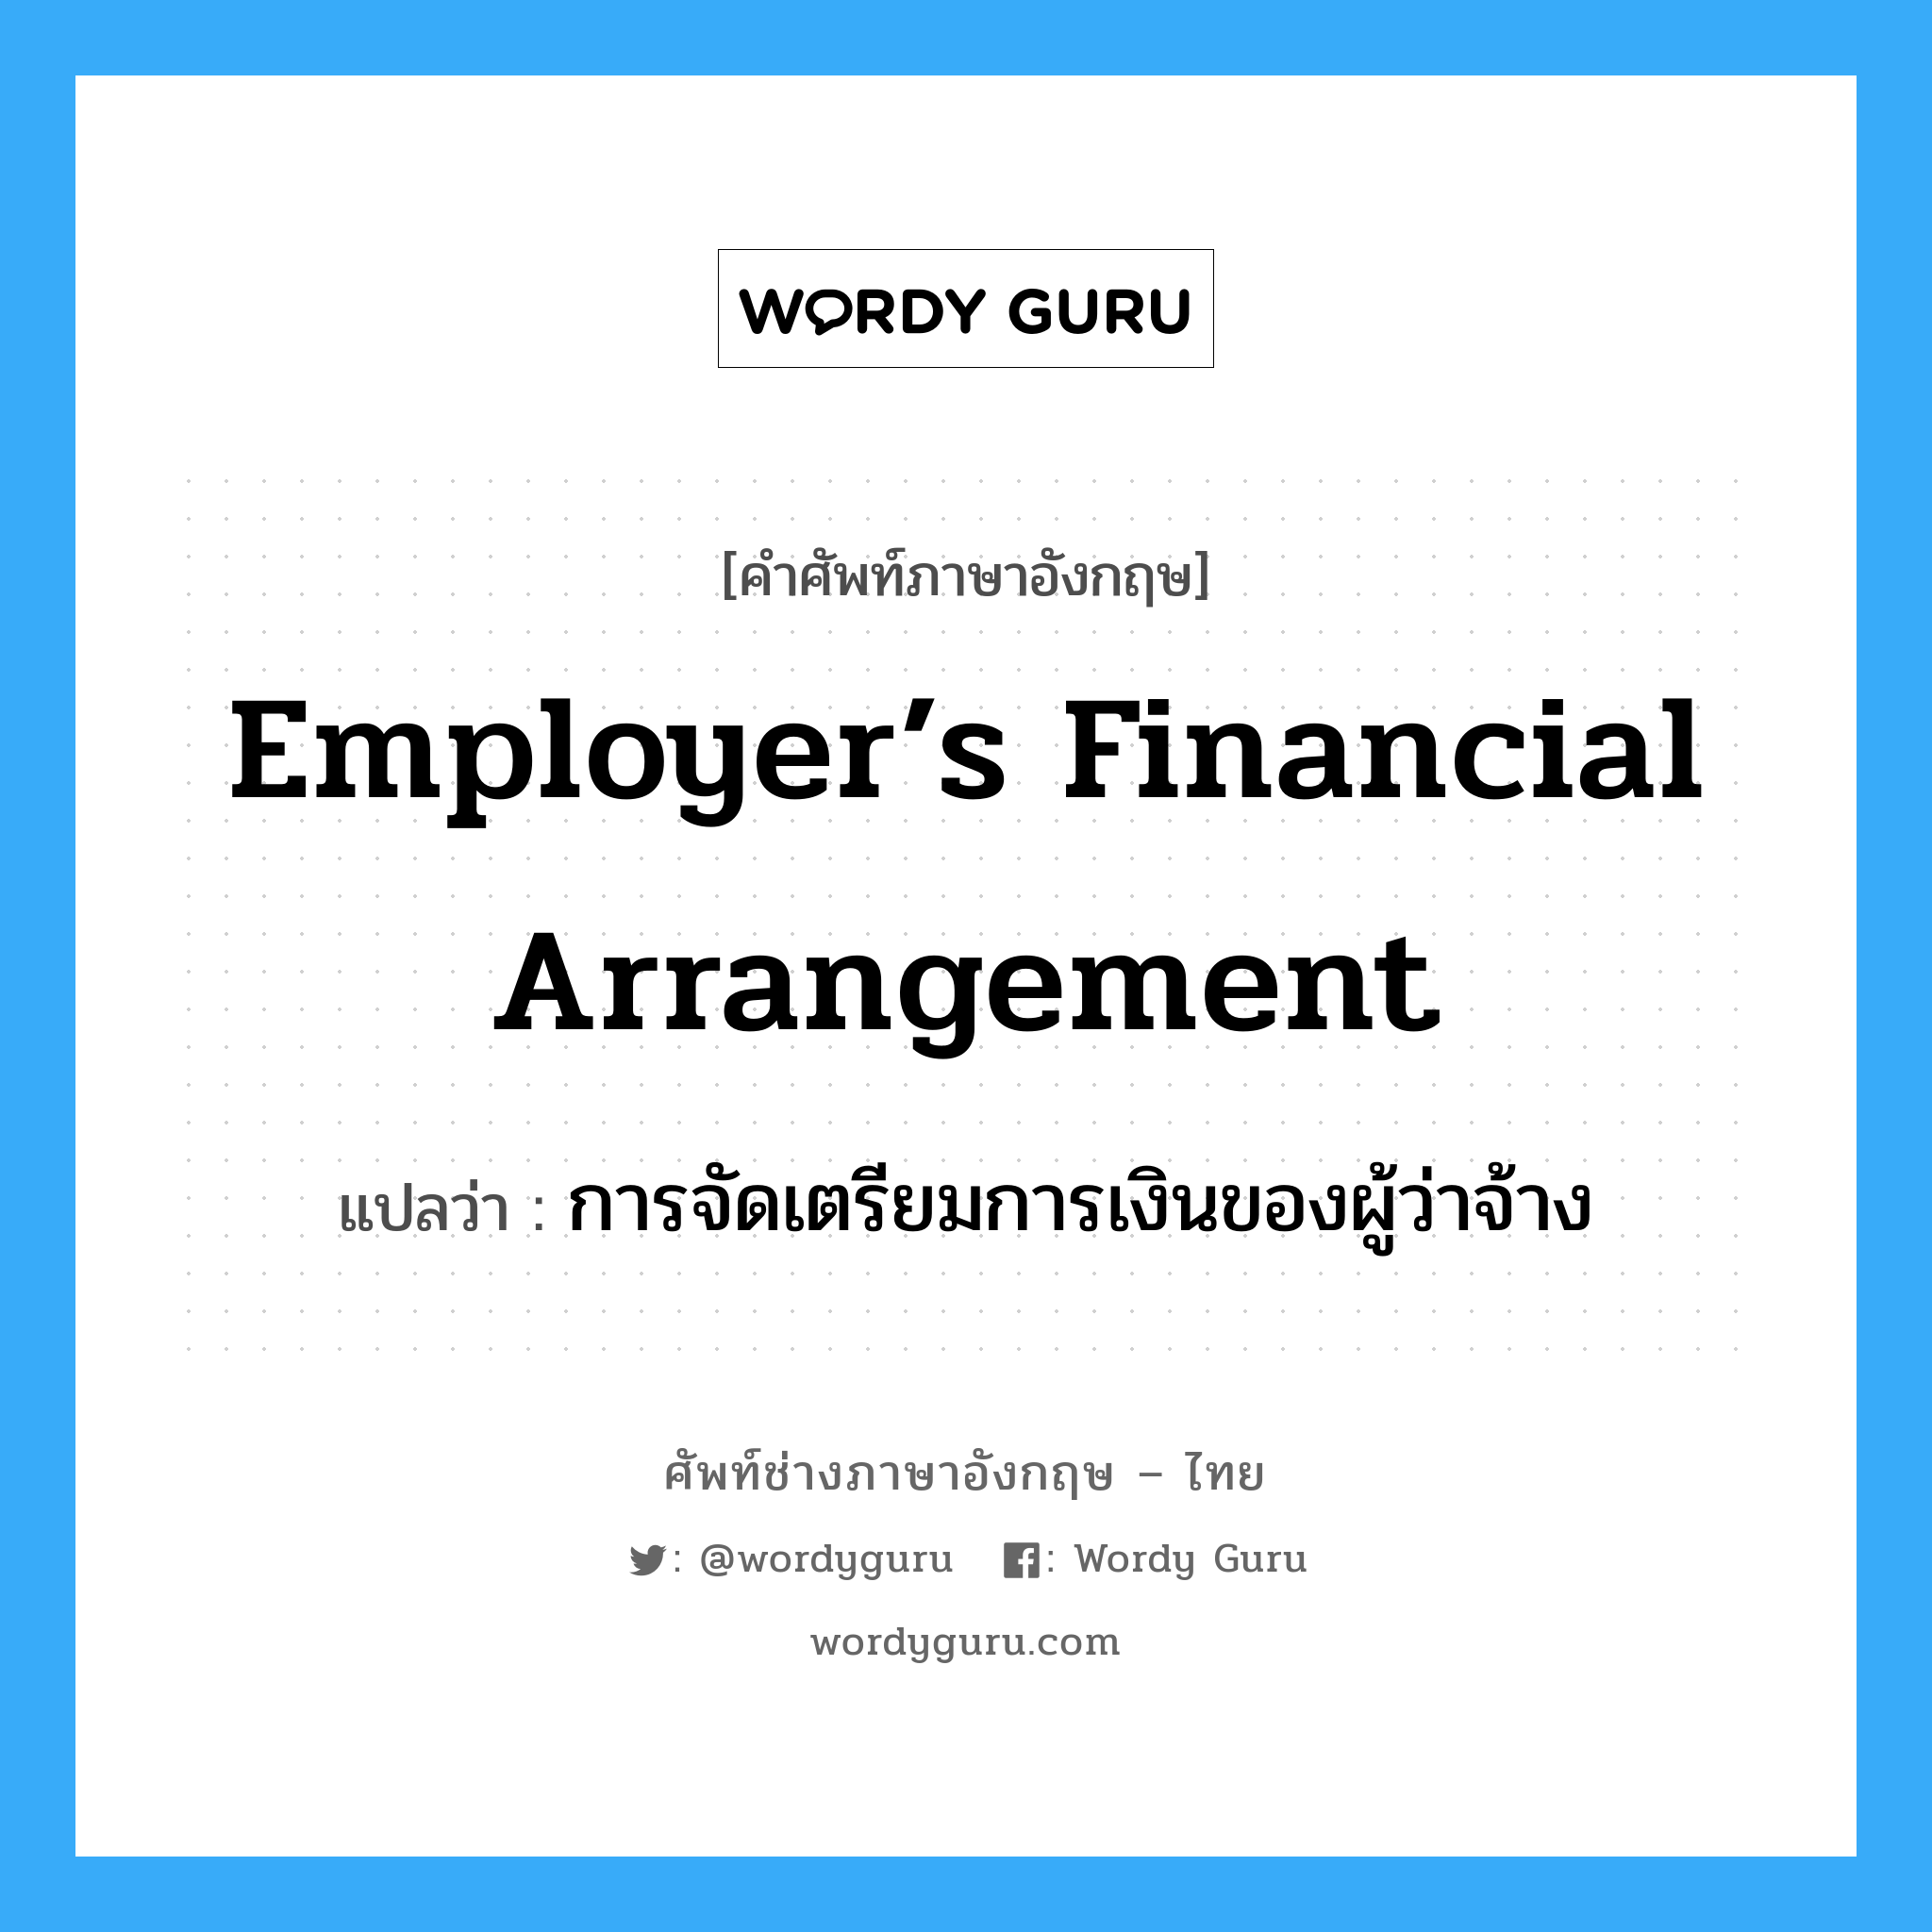 การจัดเตรียมการเงินของผู้ว่าจ้าง ภาษาอังกฤษ?, คำศัพท์ช่างภาษาอังกฤษ - ไทย การจัดเตรียมการเงินของผู้ว่าจ้าง คำศัพท์ภาษาอังกฤษ การจัดเตรียมการเงินของผู้ว่าจ้าง แปลว่า Employer’s Financial Arrangement